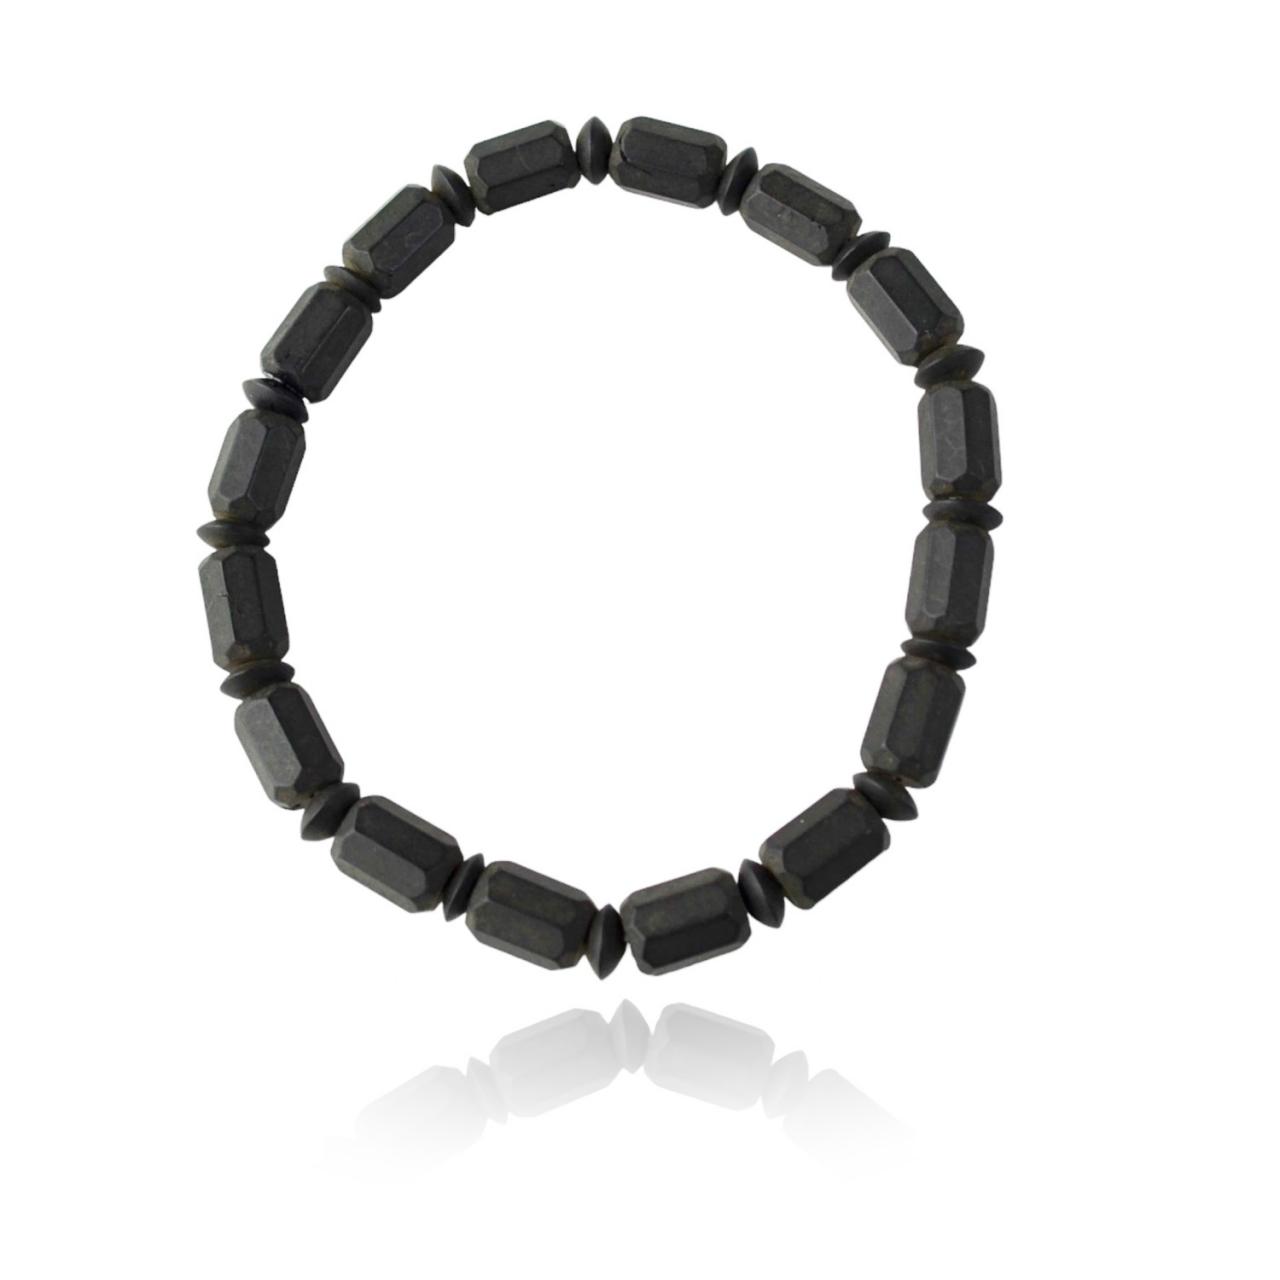 Black Raw Amber Bracelet For Men 21 Cm From Maritavita | Dst173